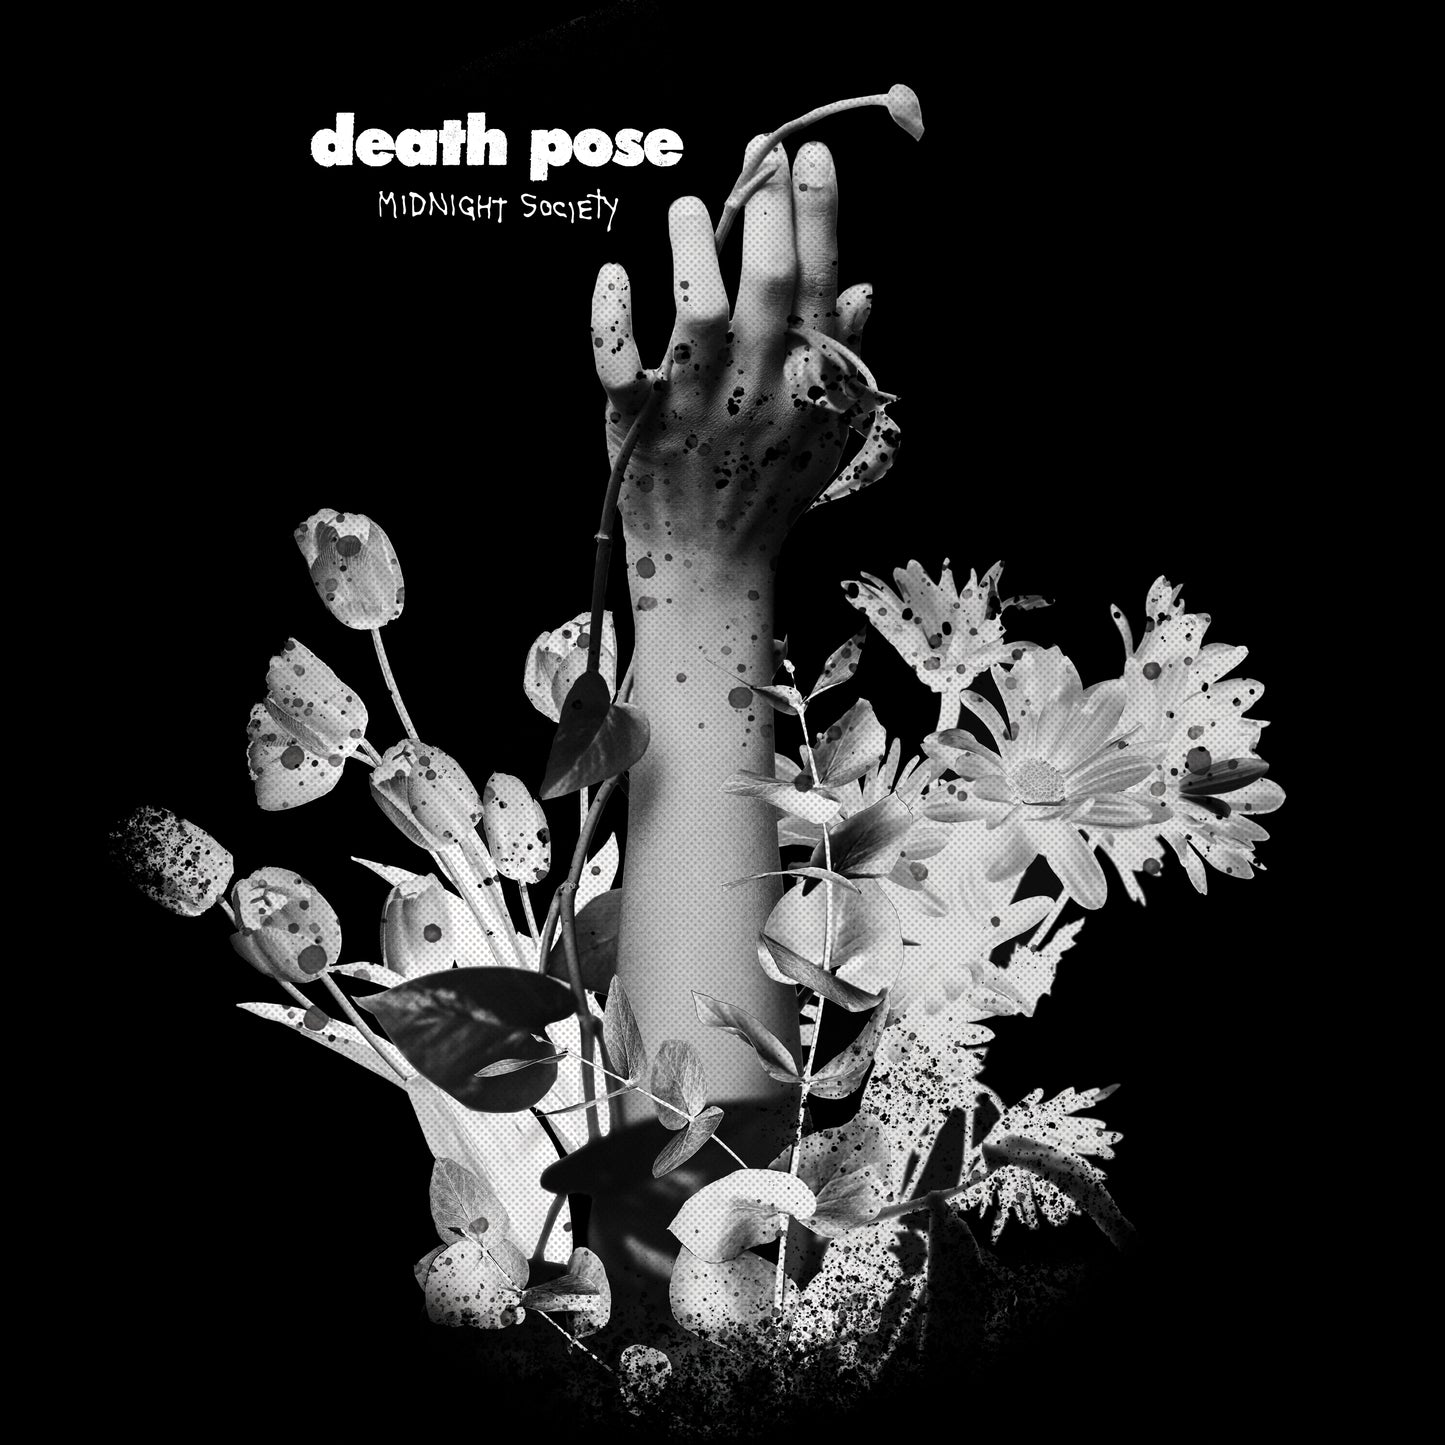 death pose - Midnight Society - 12" Vinyl (Pre-Order)